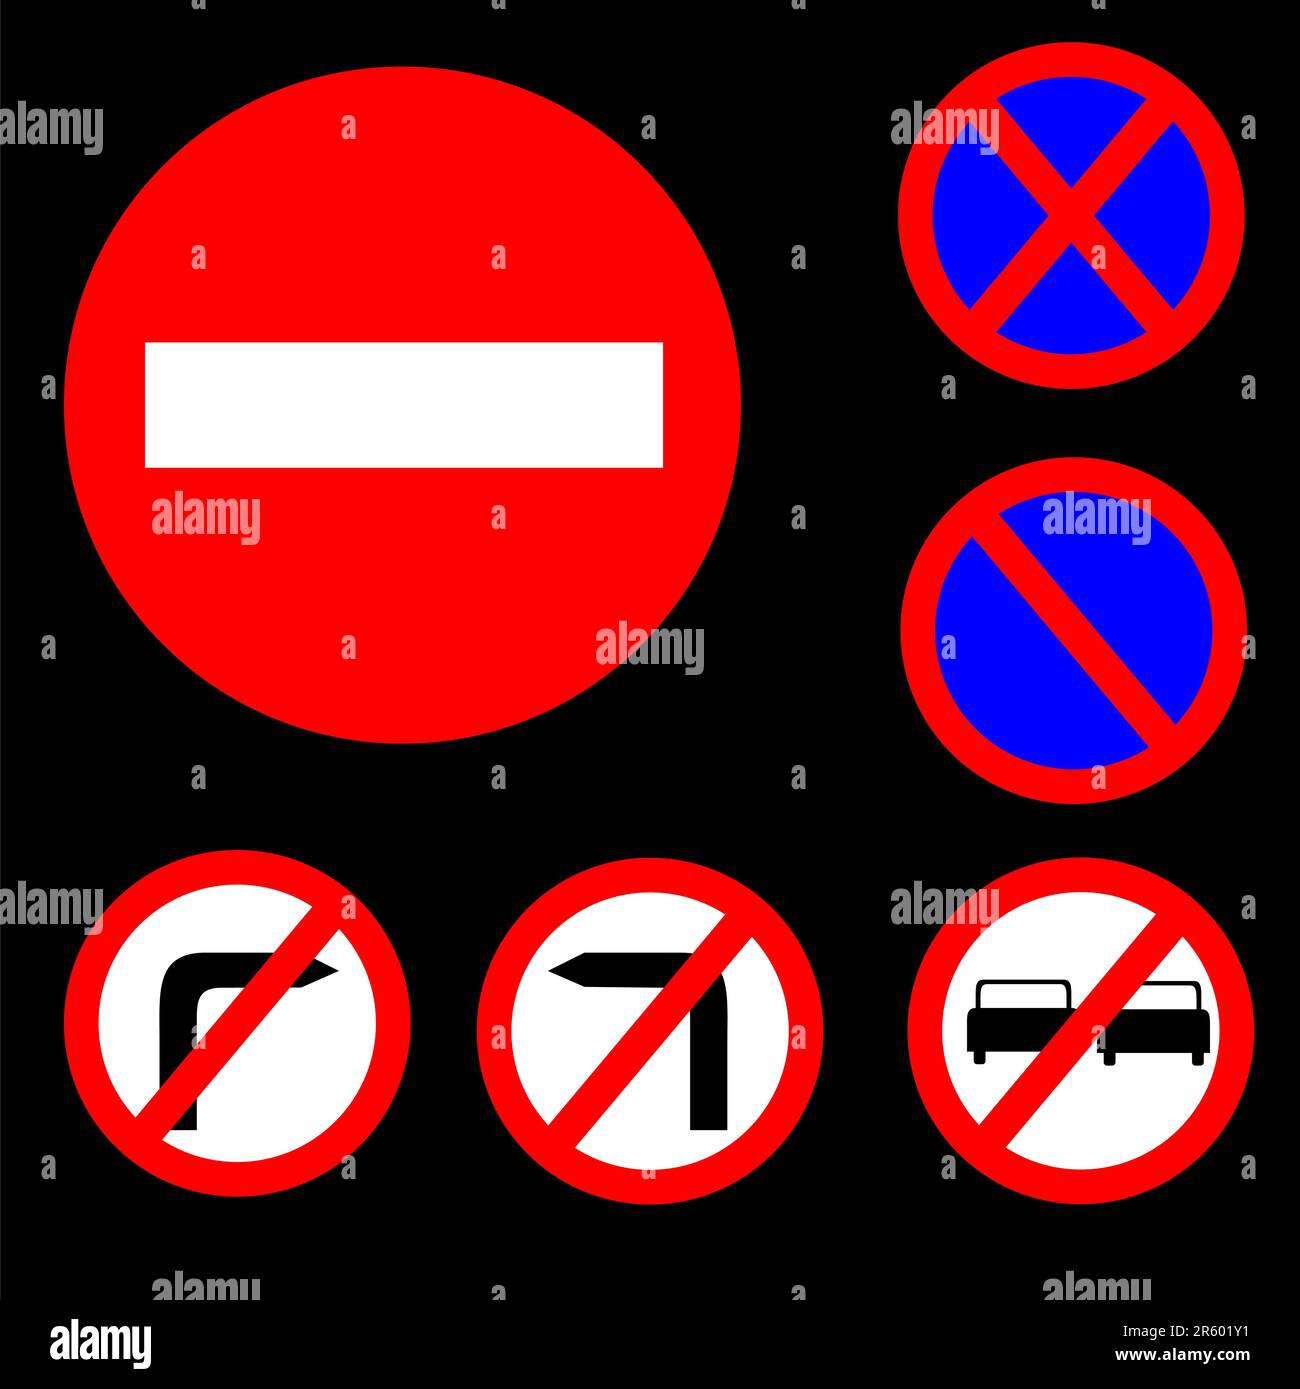 Illustrazione vettoriale di sei cartelli stradali rotondi di colore rosso, bianco e blu, set 1 Illustrazione Vettoriale